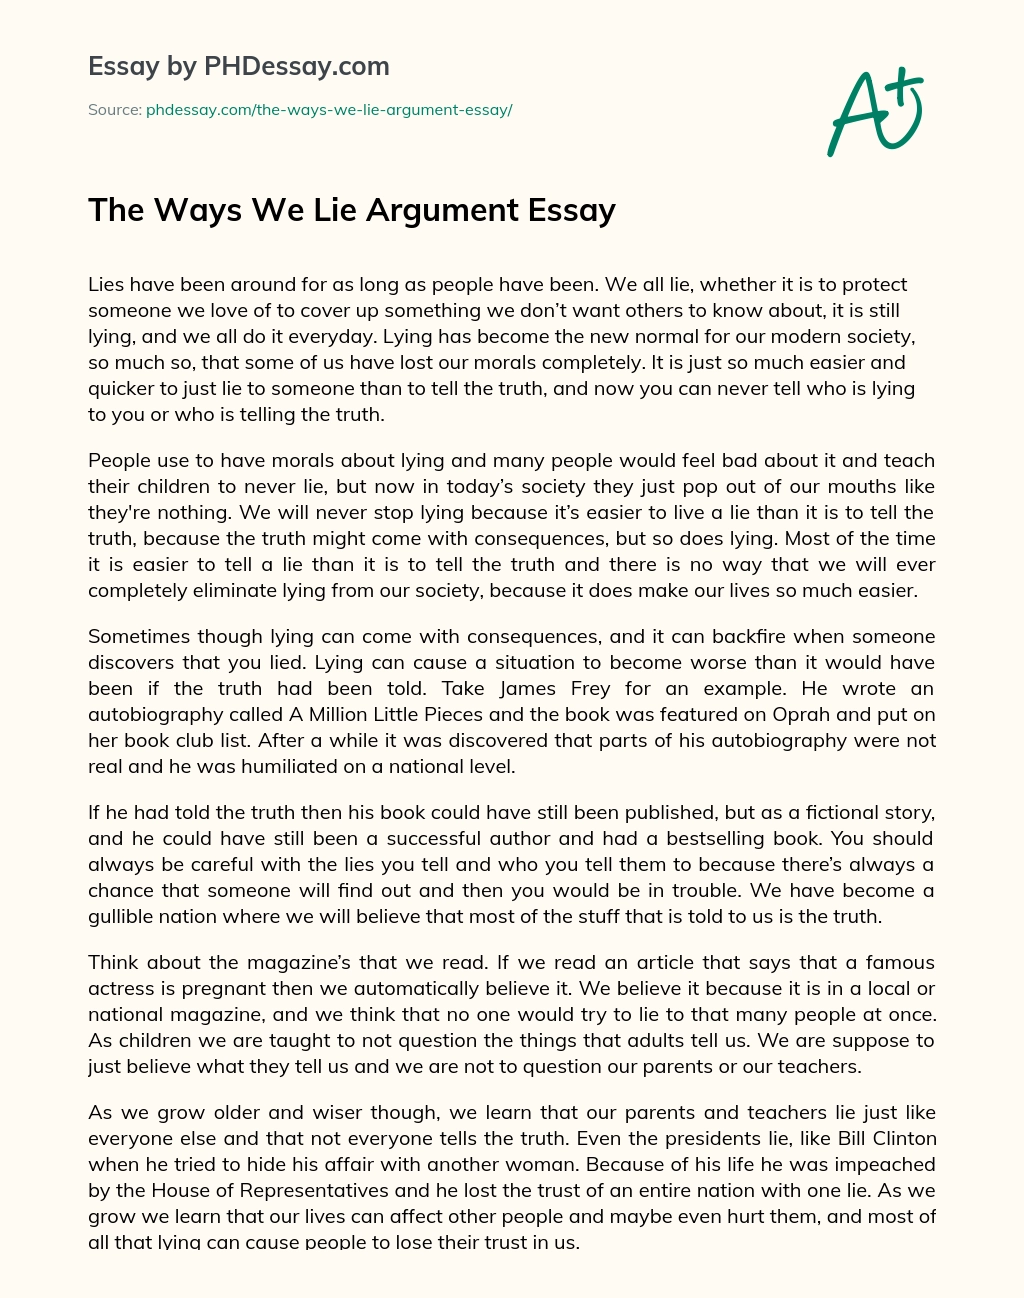 The Ways We Lie Argument Essay essay